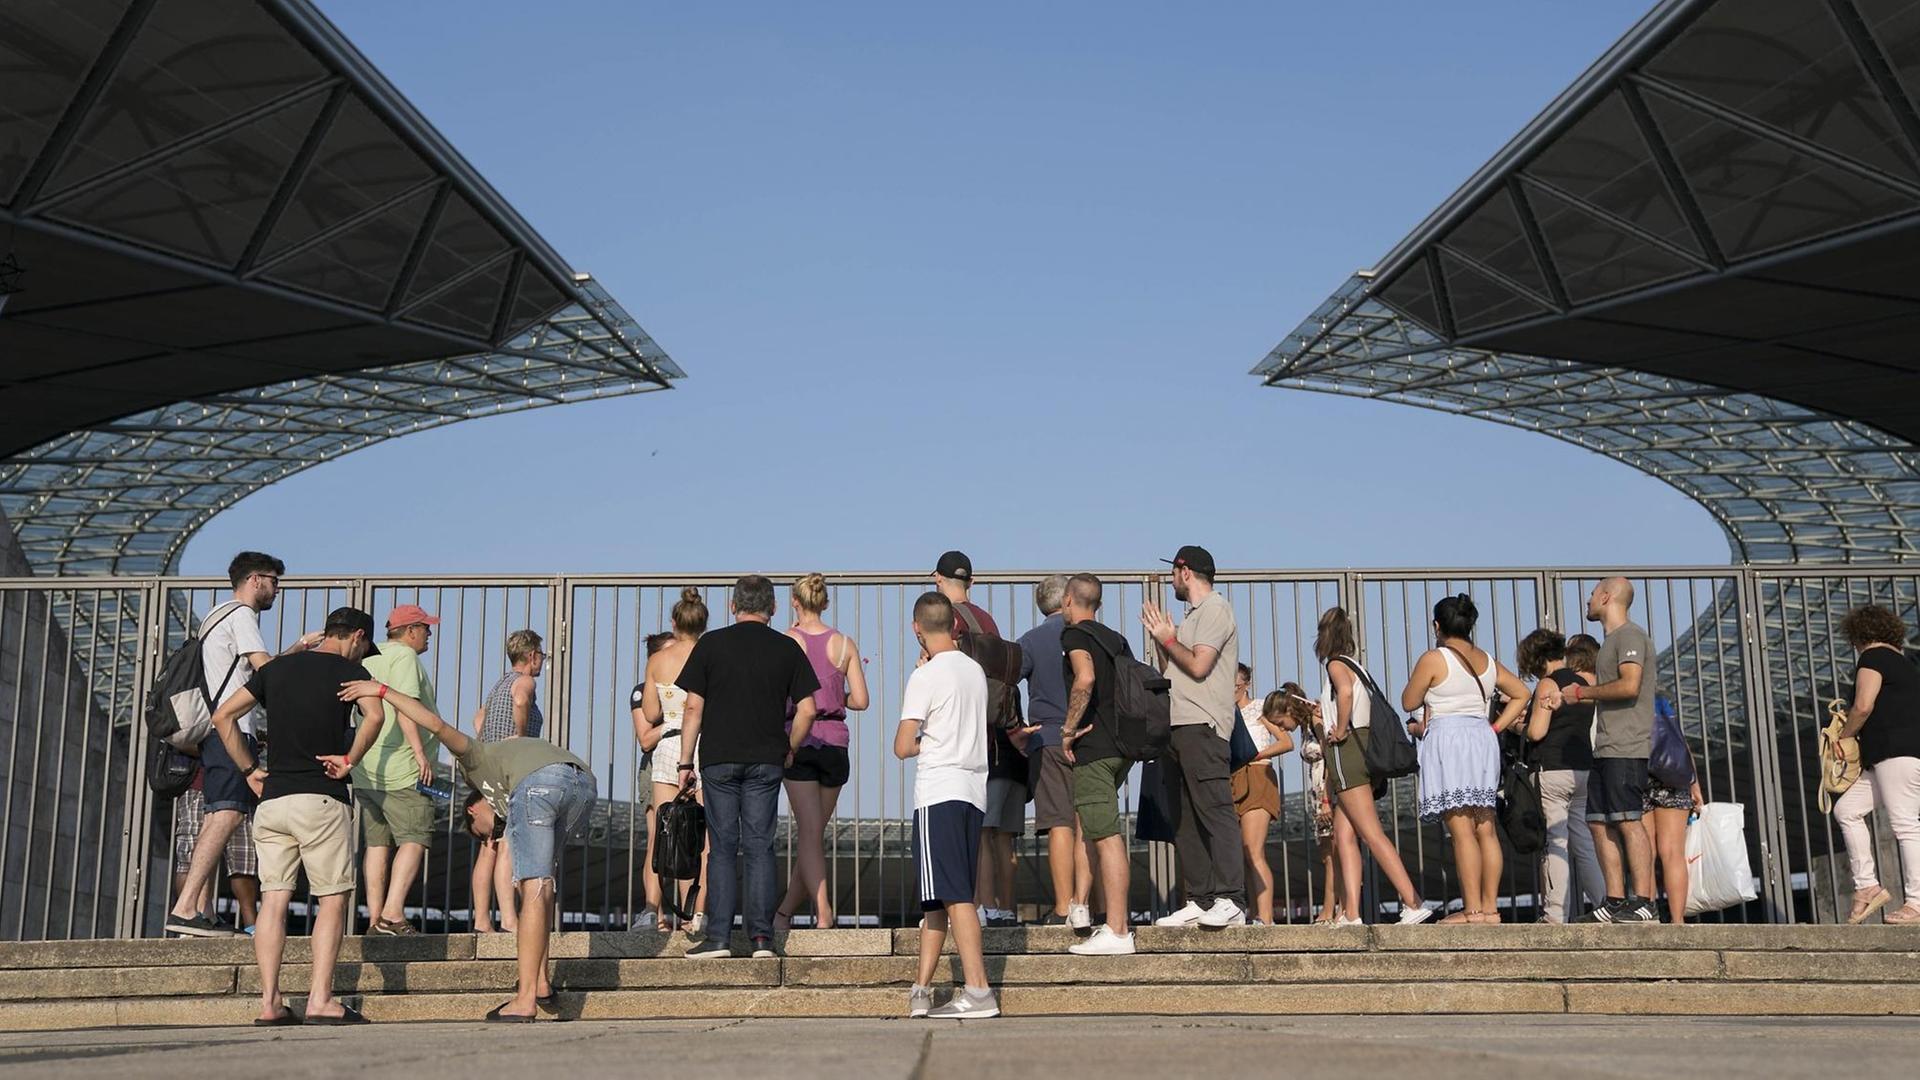 Besucher stehen vor der Umzäunung des Berliner Olympiastadions und blicken hinein.